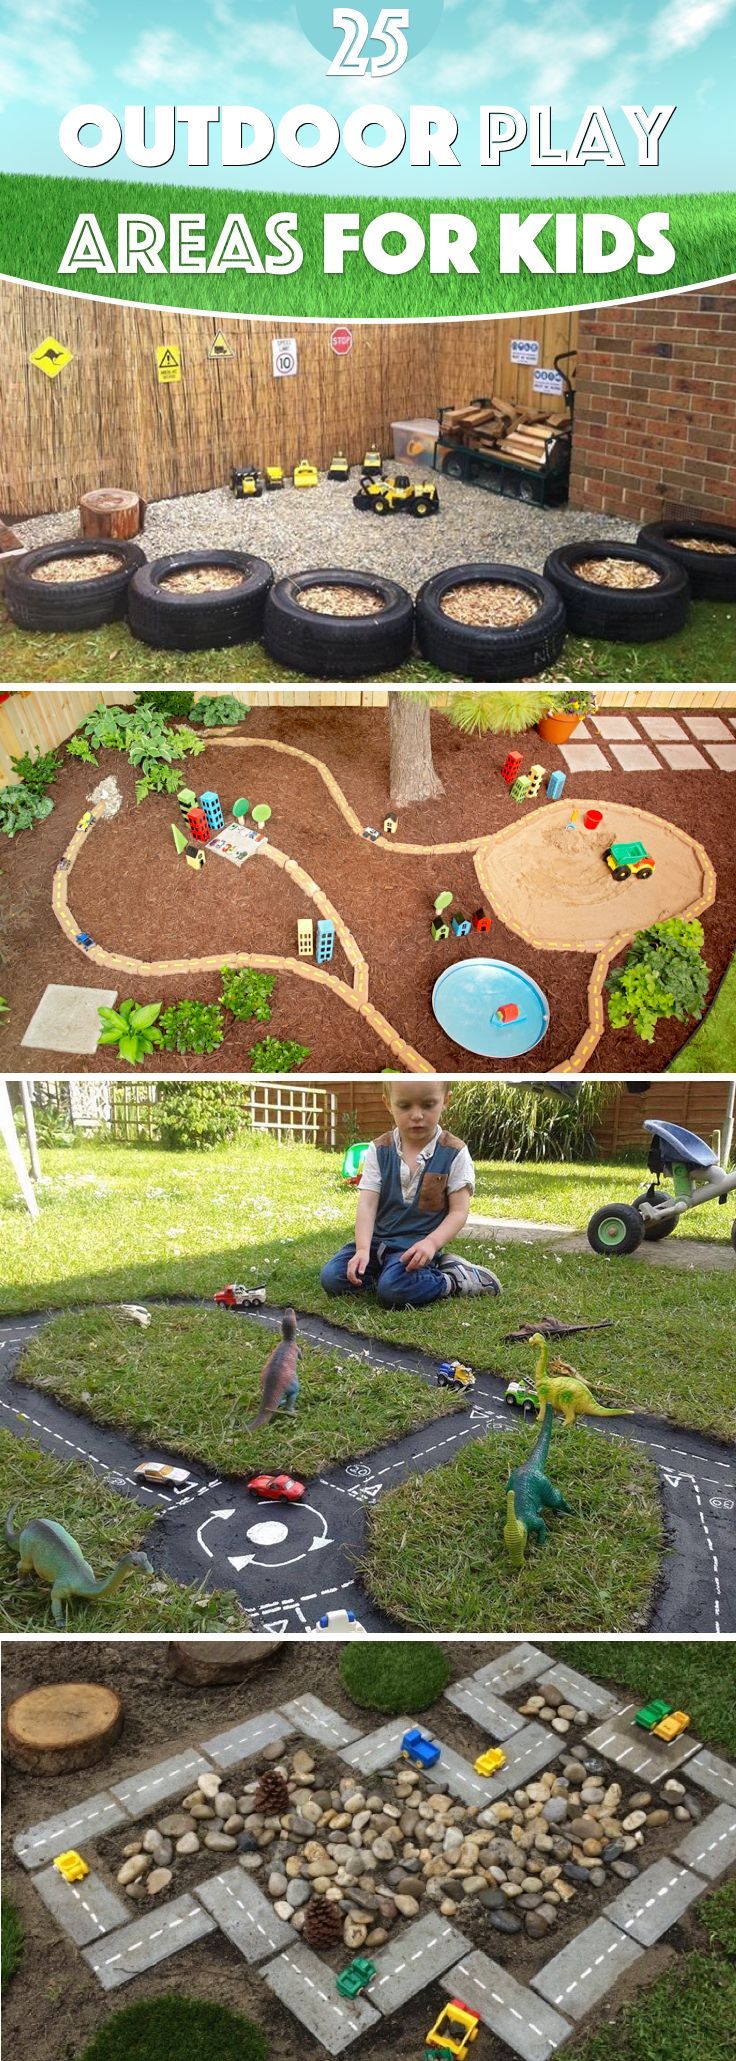 outdoor play area for garden